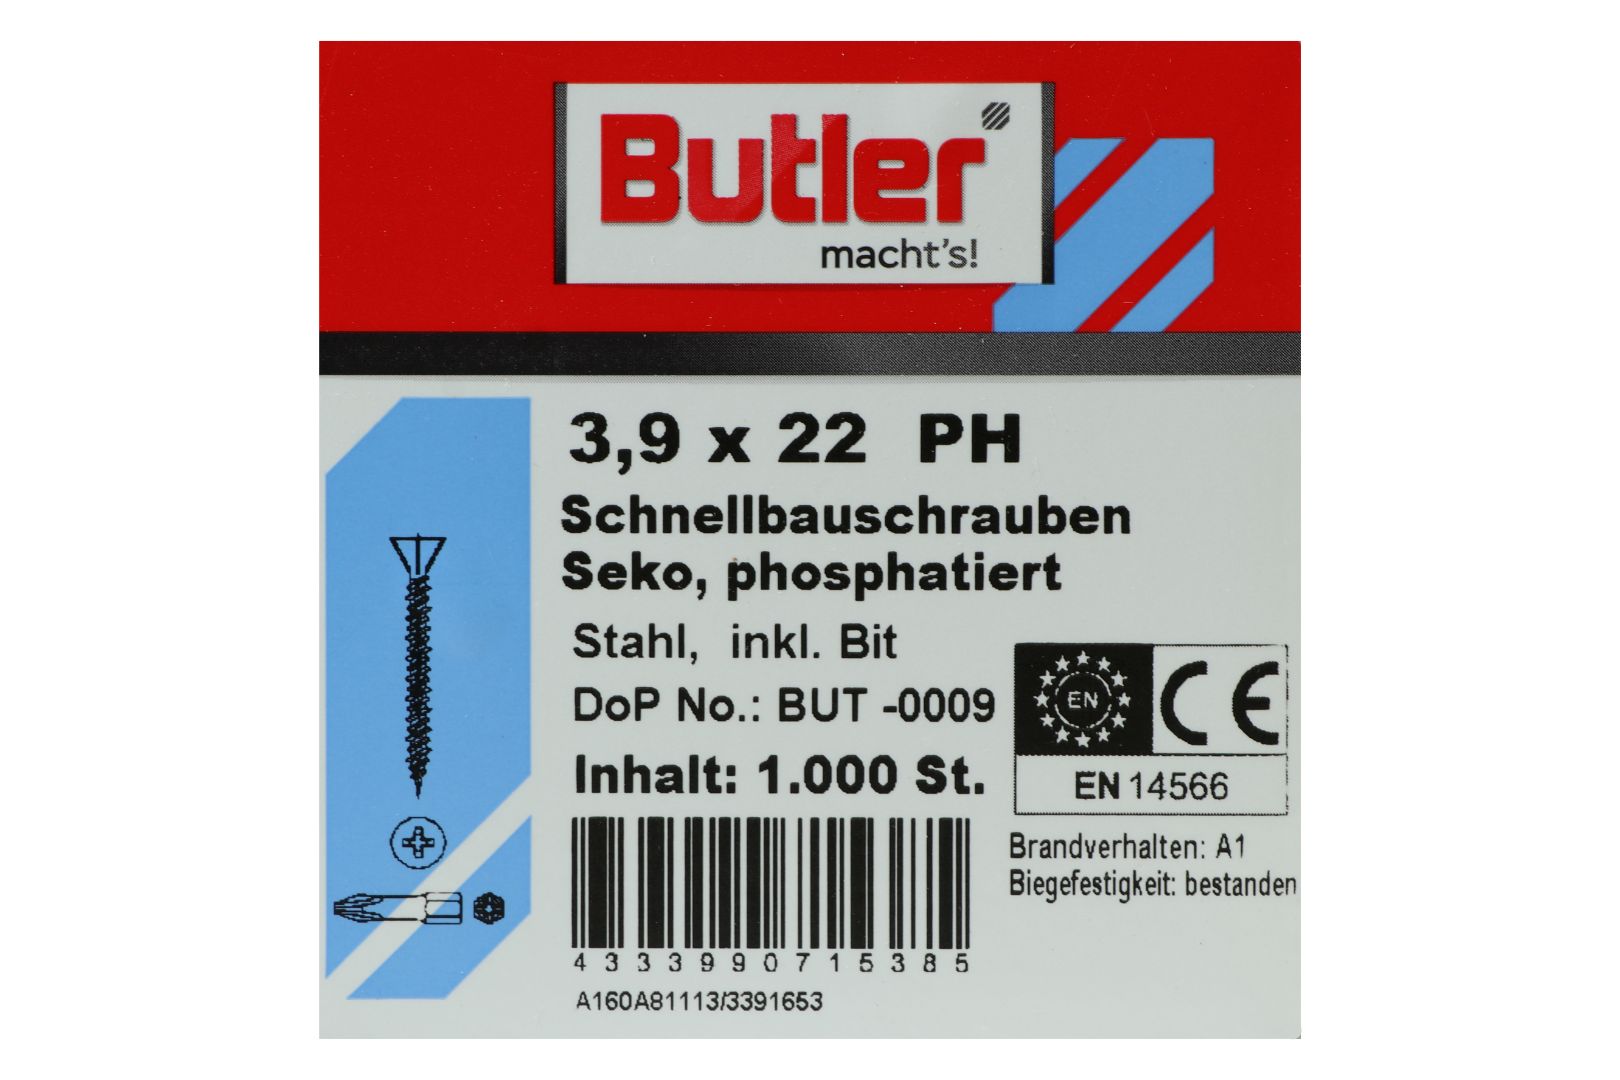 Butler macht's! Schnellbauschrauben inkl. Bit für Faserplatten auf Holz und Metall bis 0,6 mm, HiLo-Gewinde, PH2, 3,9 x 22 mm, 1.000 Stück